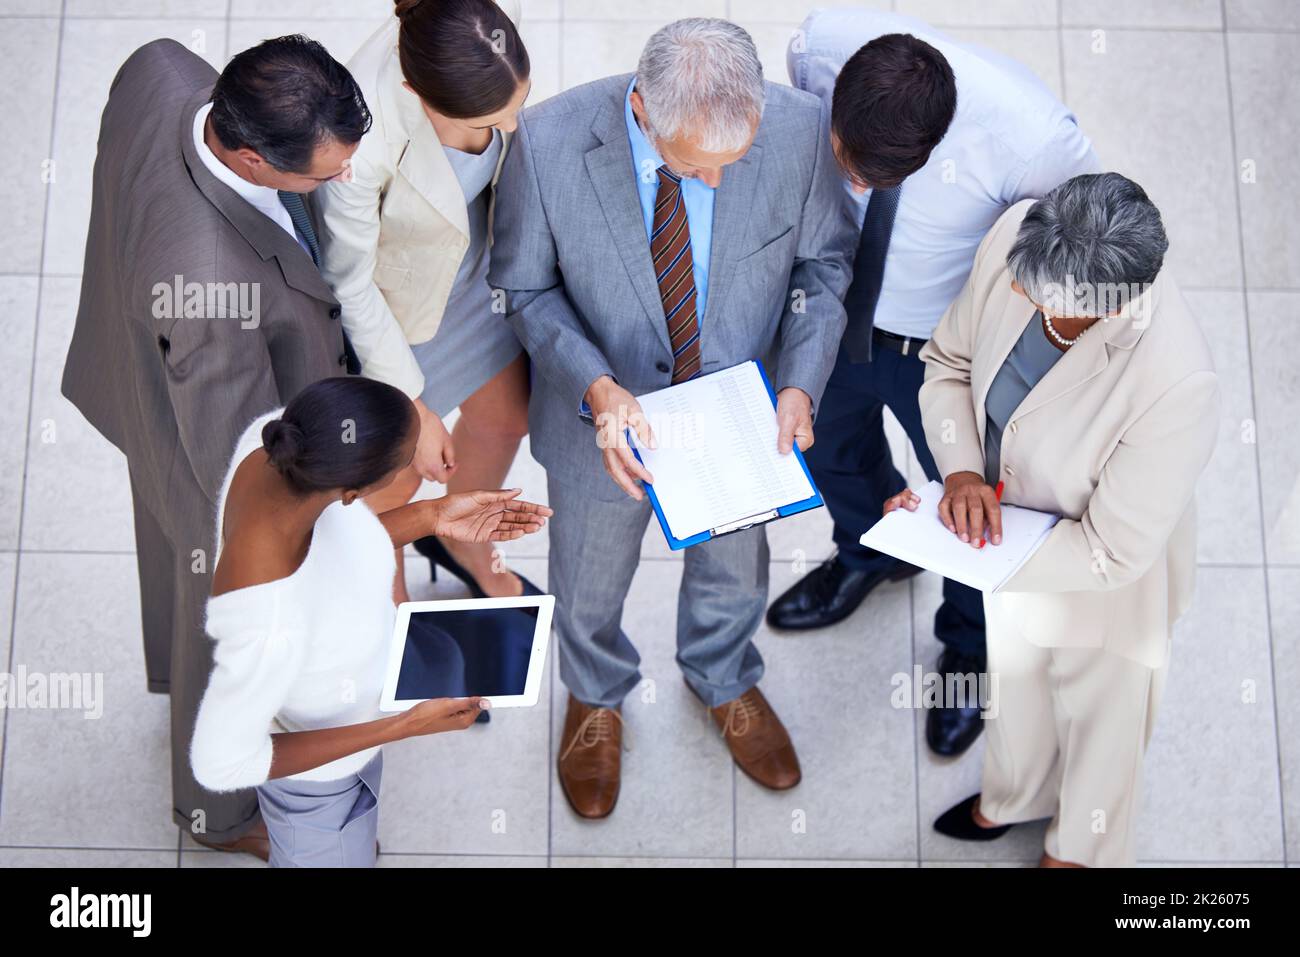 Lors d'une réunion impromptue, une équipe d'affaires diversifiée discute de la paperasse lors d'une réunion Banque D'Images